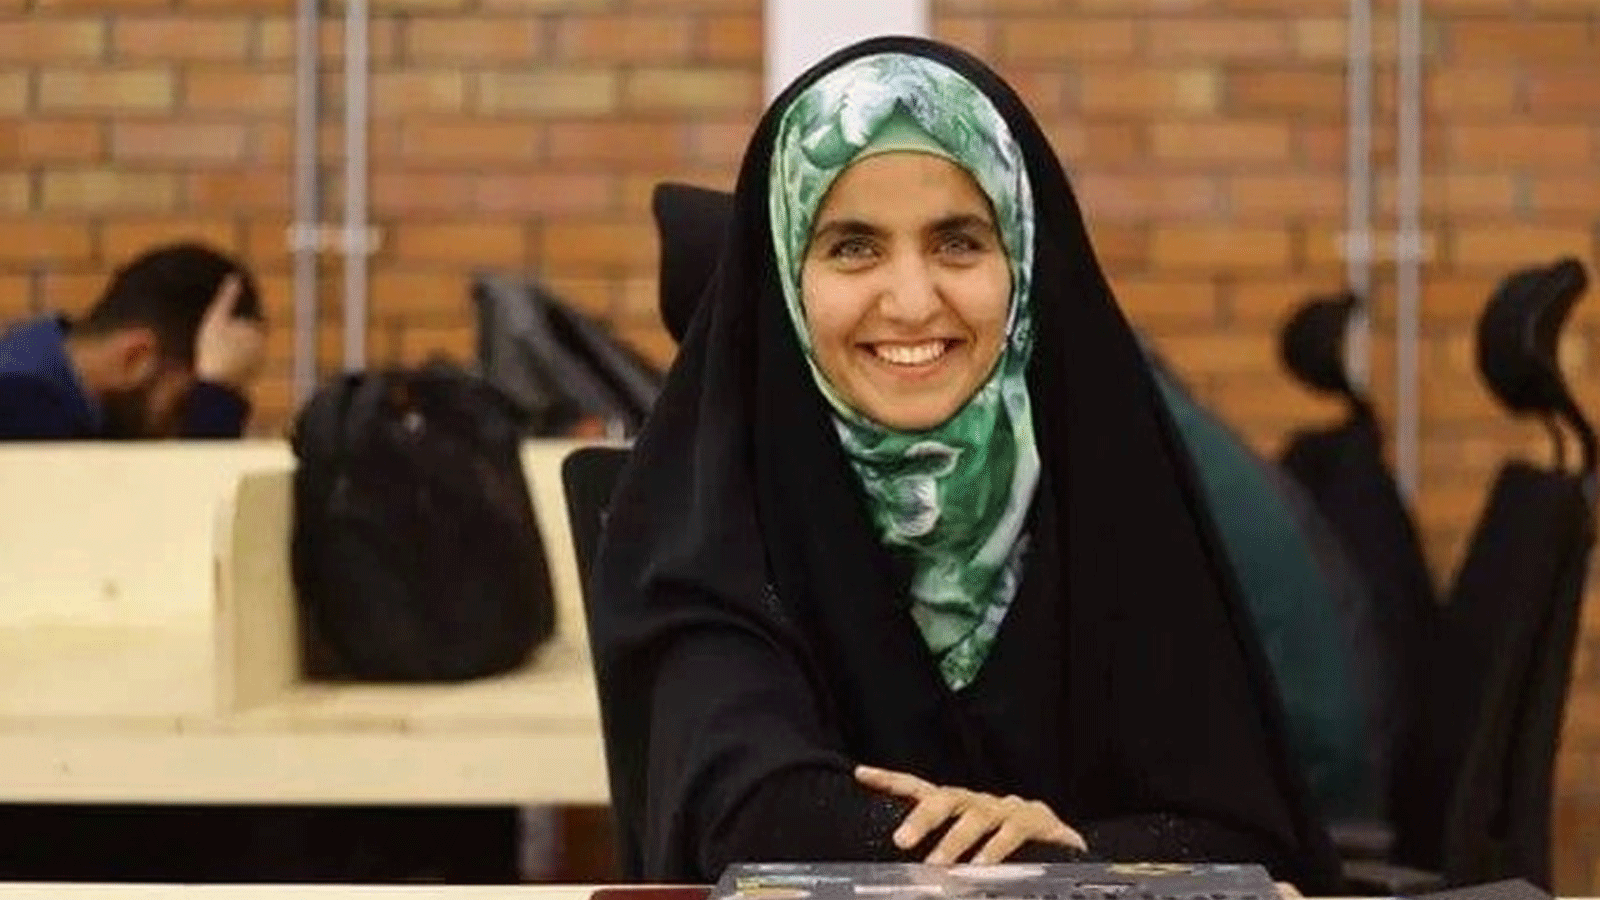 العراقية فاطمة حسن ياسر اختيرت واحدة من أكثر مائة امرأة في العالم يستحقن المشاهدة (فيسبوك)